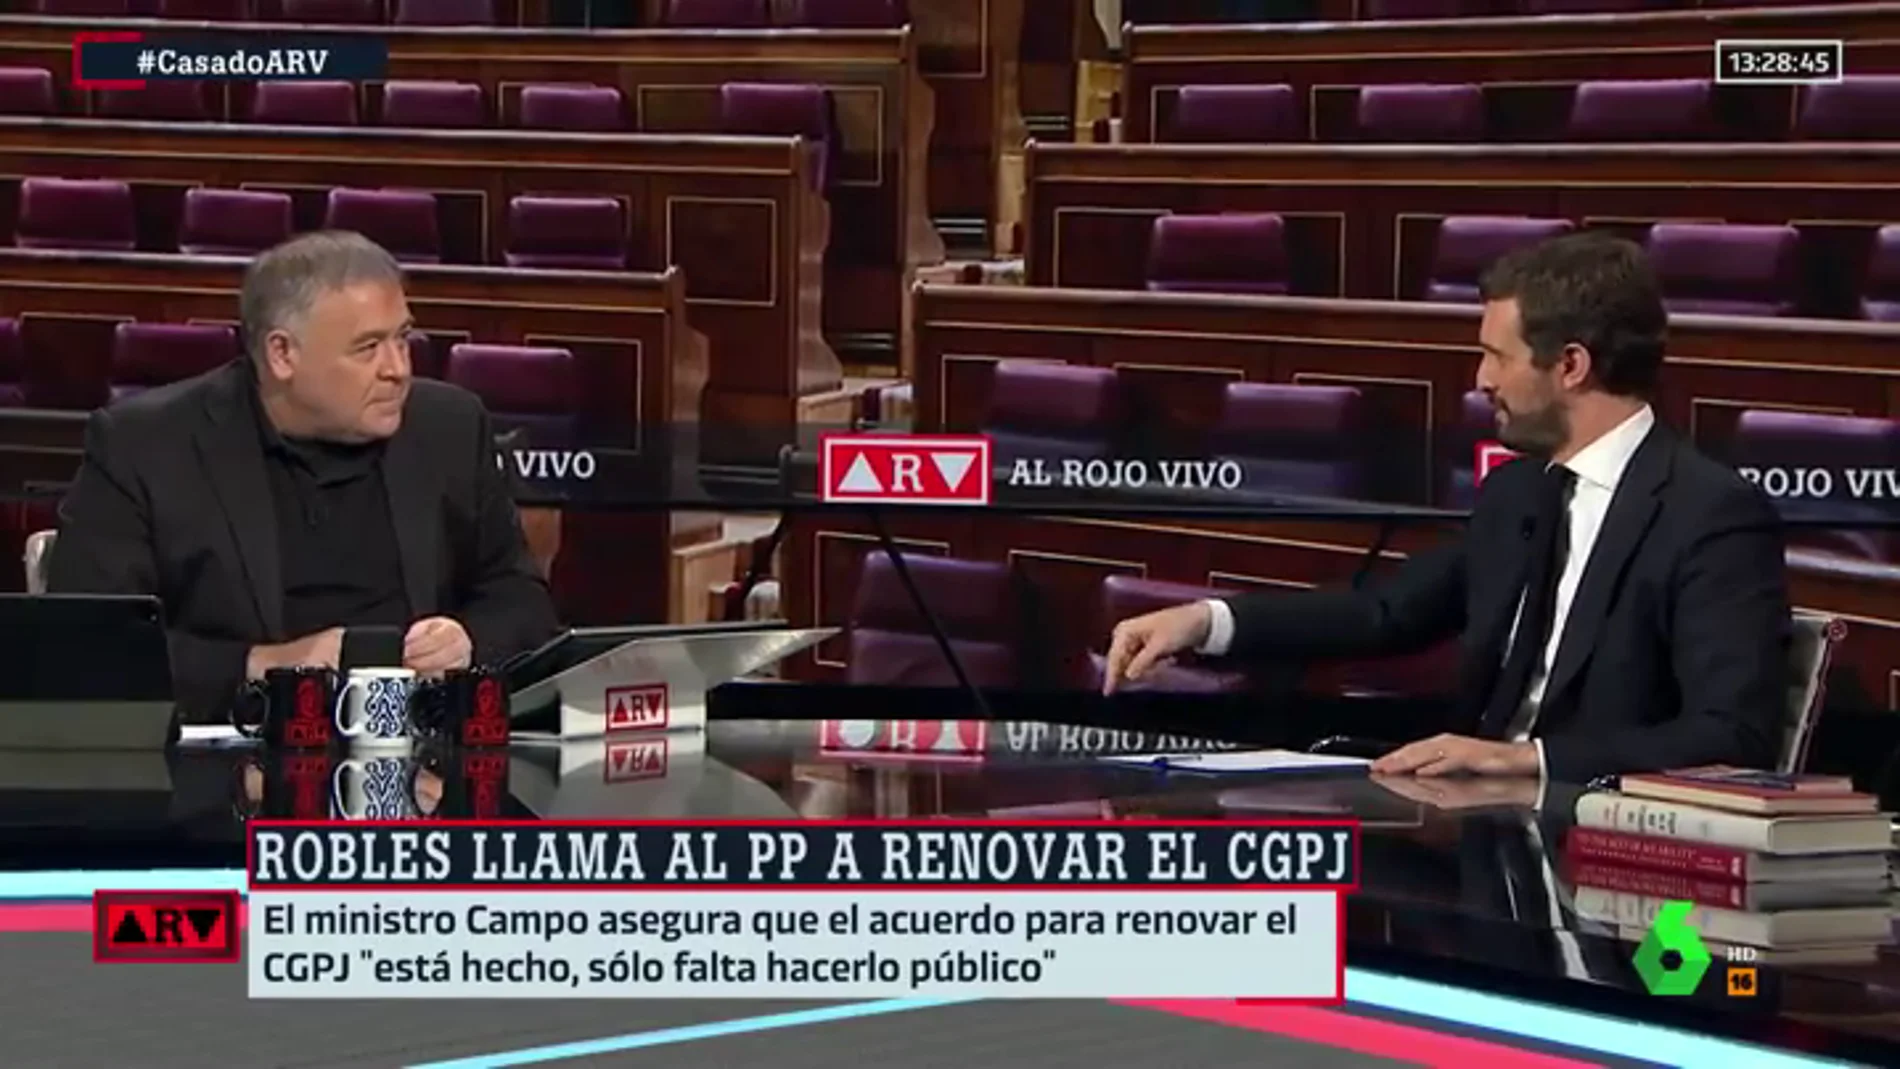 Casado pide a Sánchez que el CGPJ se renueve con "un acuerdo entre PP y PSOE" porque "jamás se han sumado más partidos"